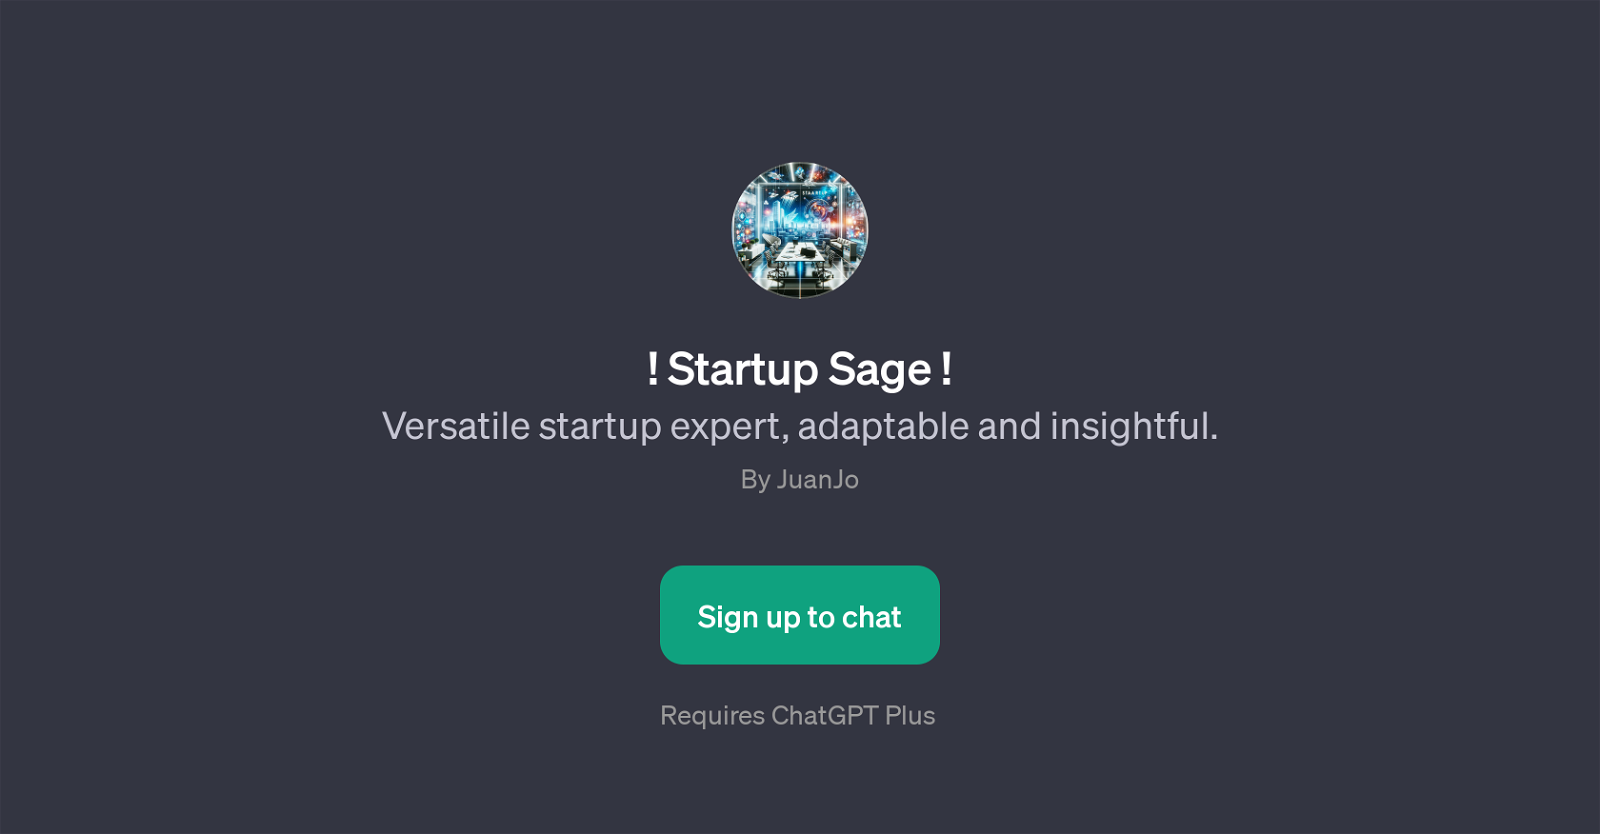 Startup Sage website